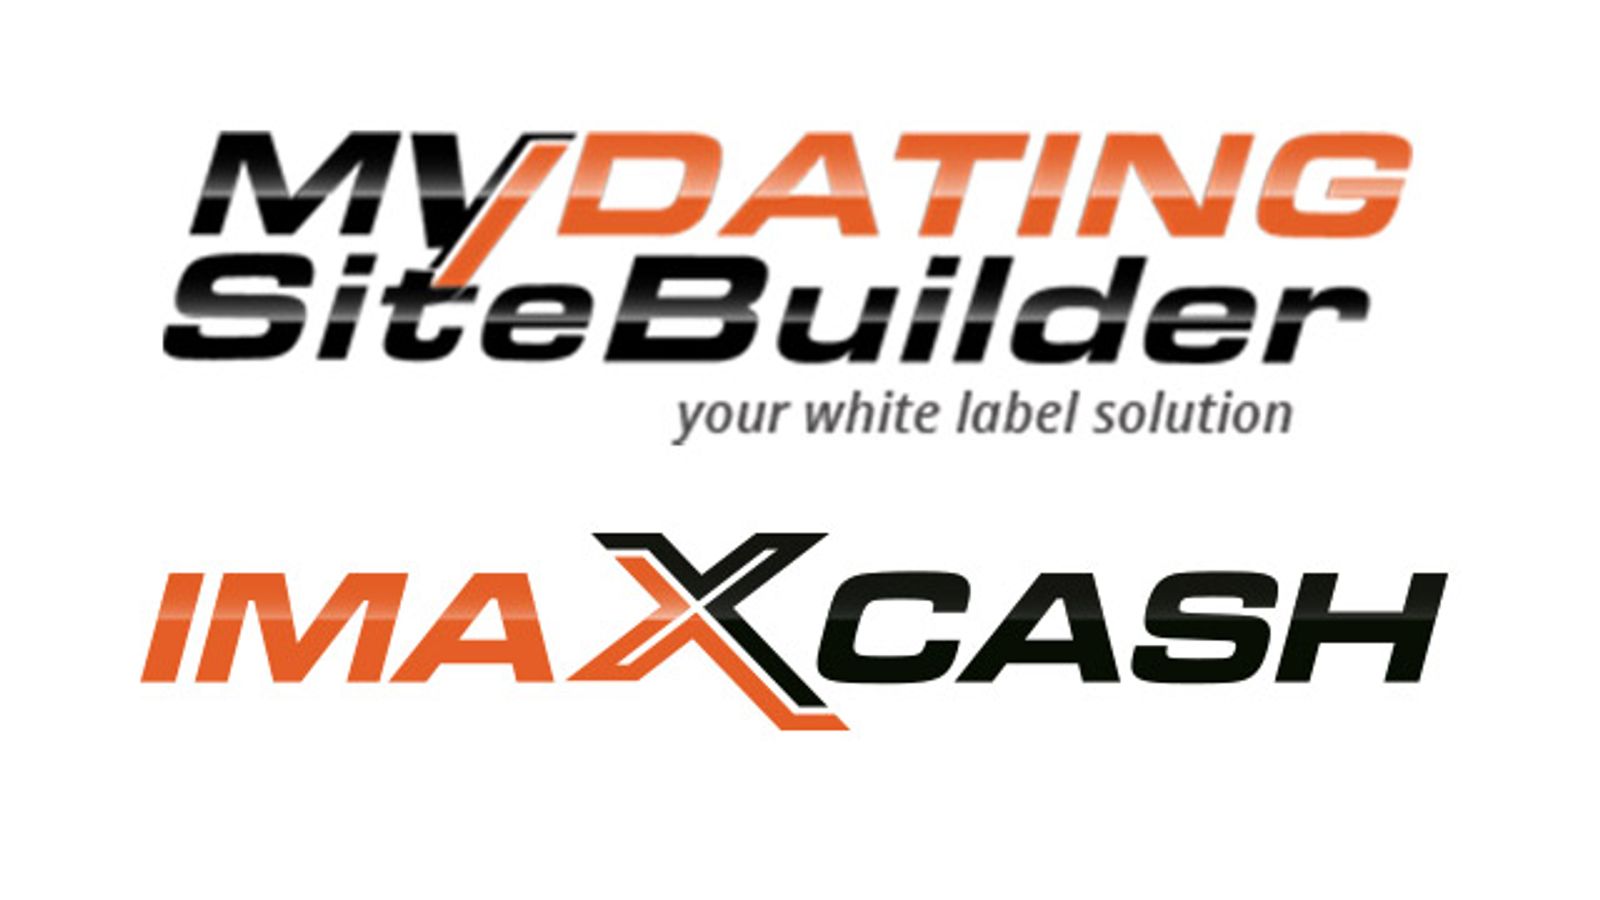 Online Dating Leader Introduces White Label MyDatingSiteBuilder